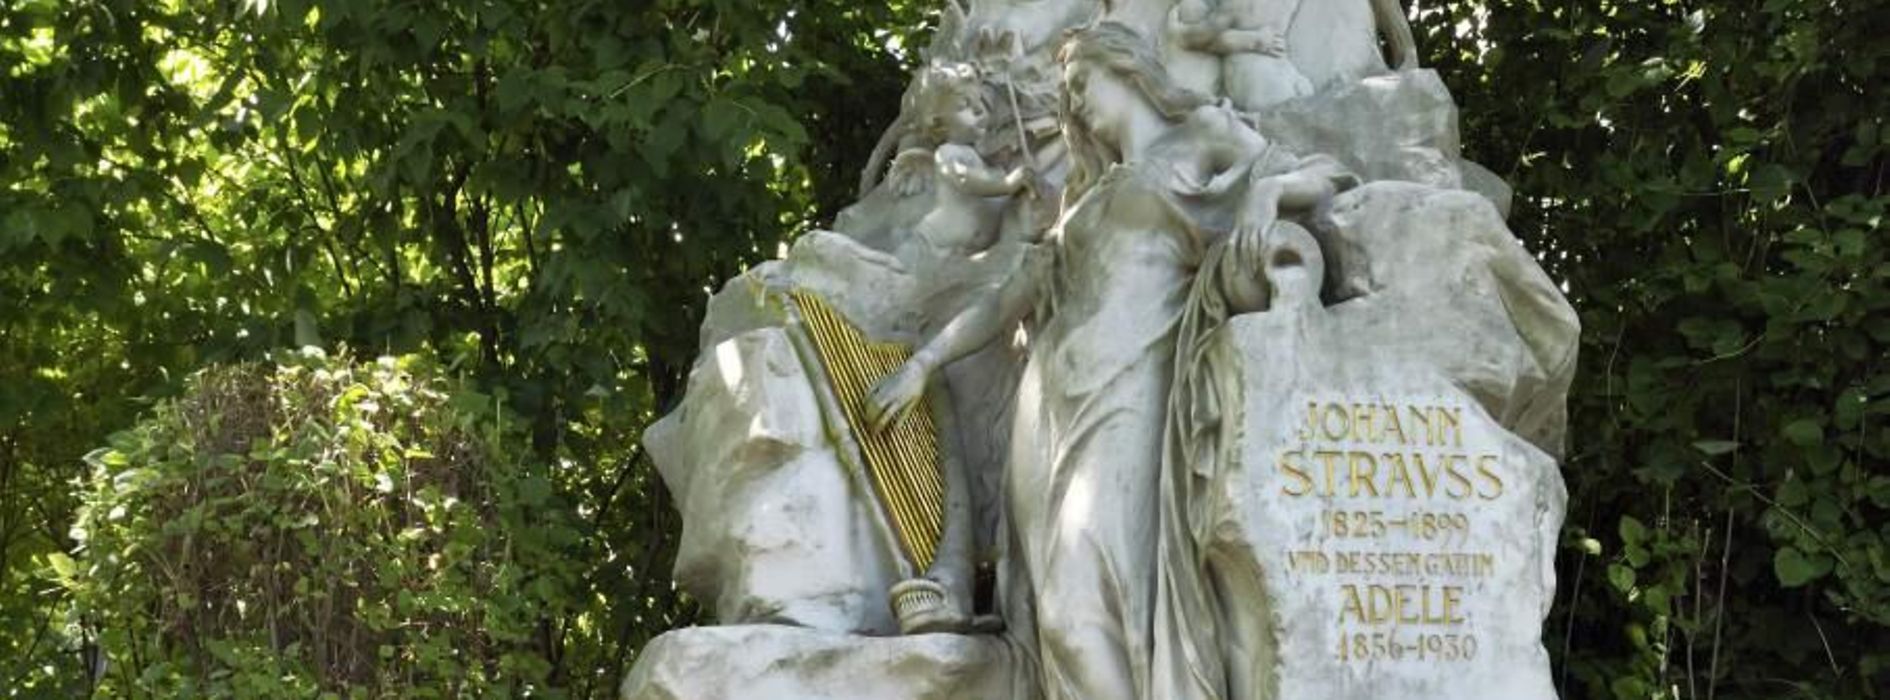 Sepulcro de Strauss en el cementerio principal